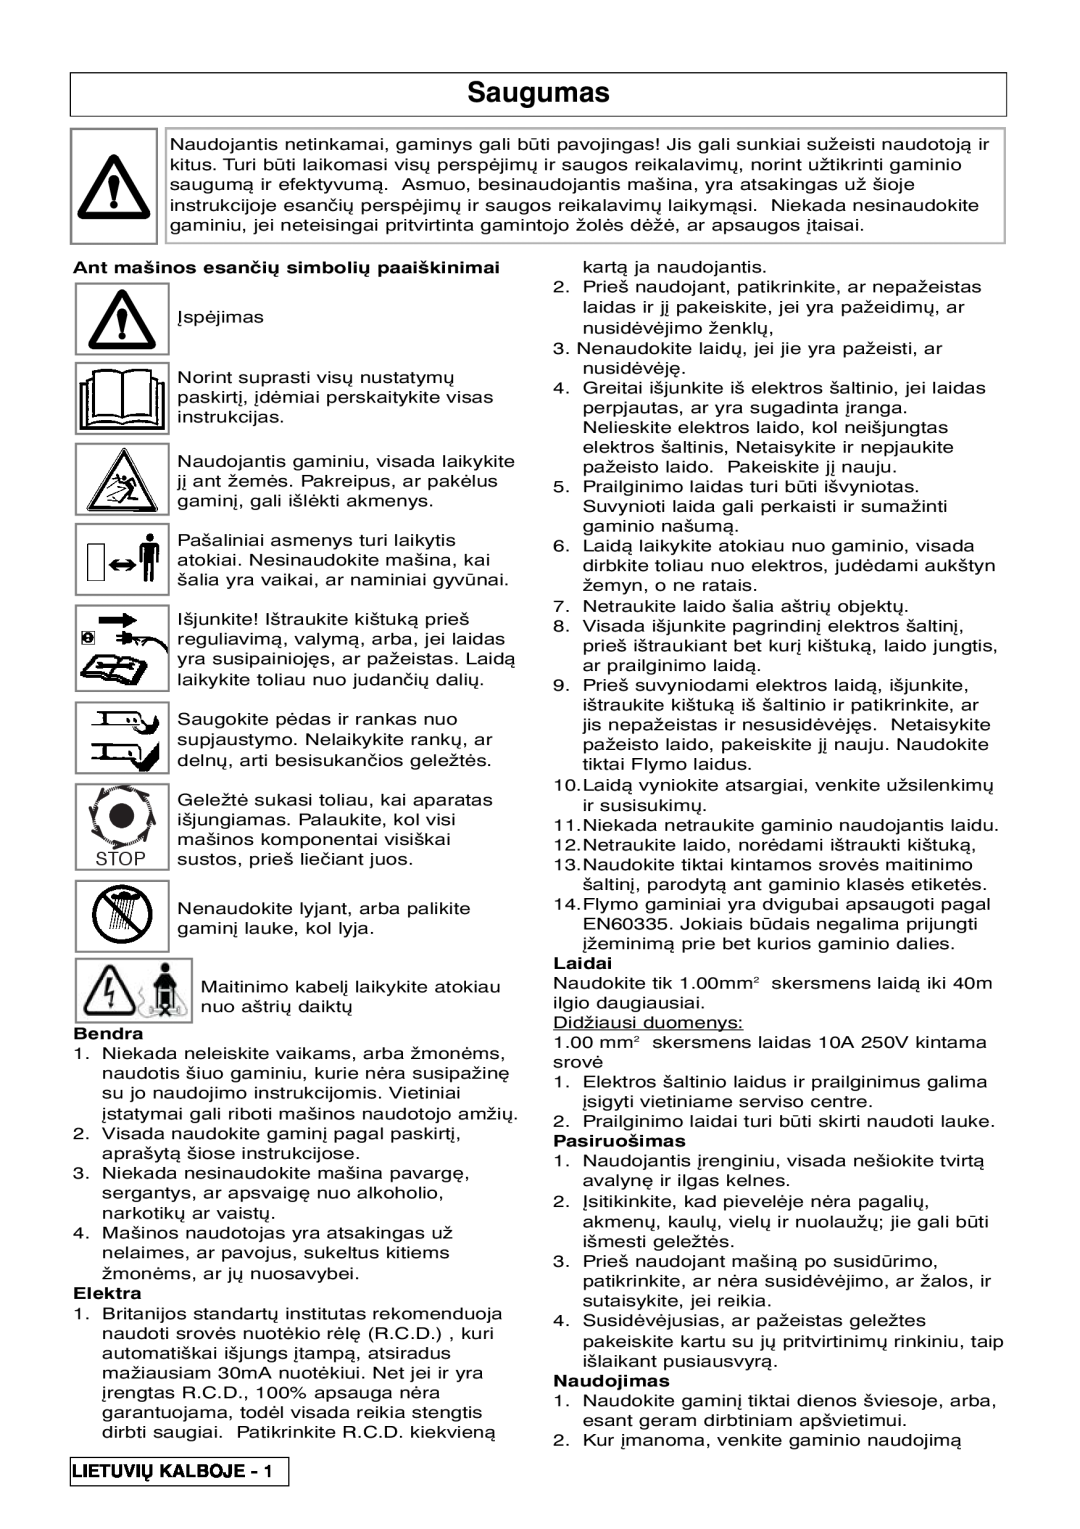 Flymo VM032 manual Saugumas, Ant mašinos esančiÅ simboliÅ paaiškinimai, Bendra, Elektra, Laidai, Pasiruošimas, Naudojimas 